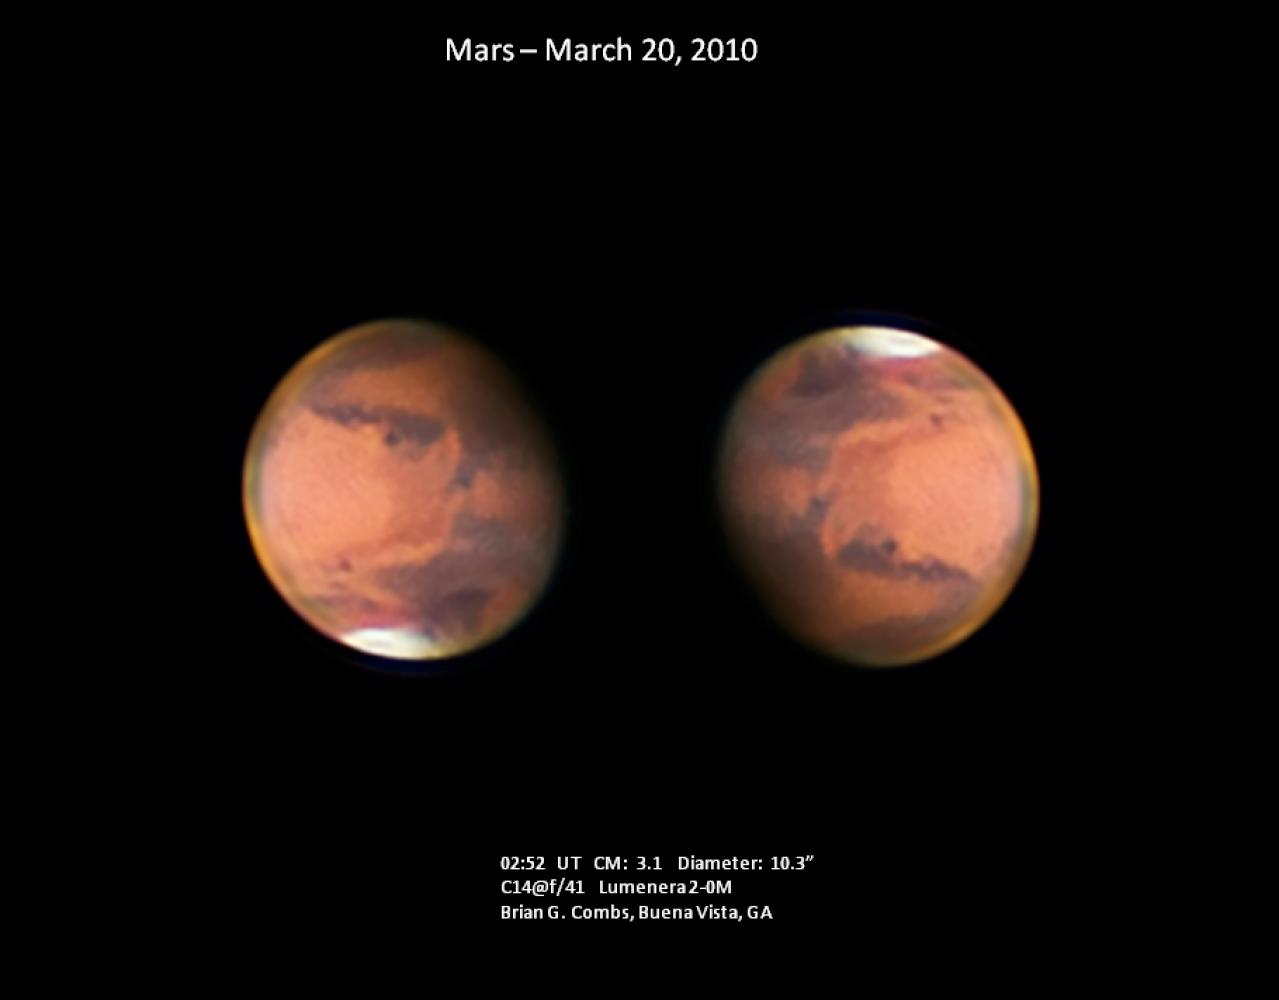 Mars - 03-20-10